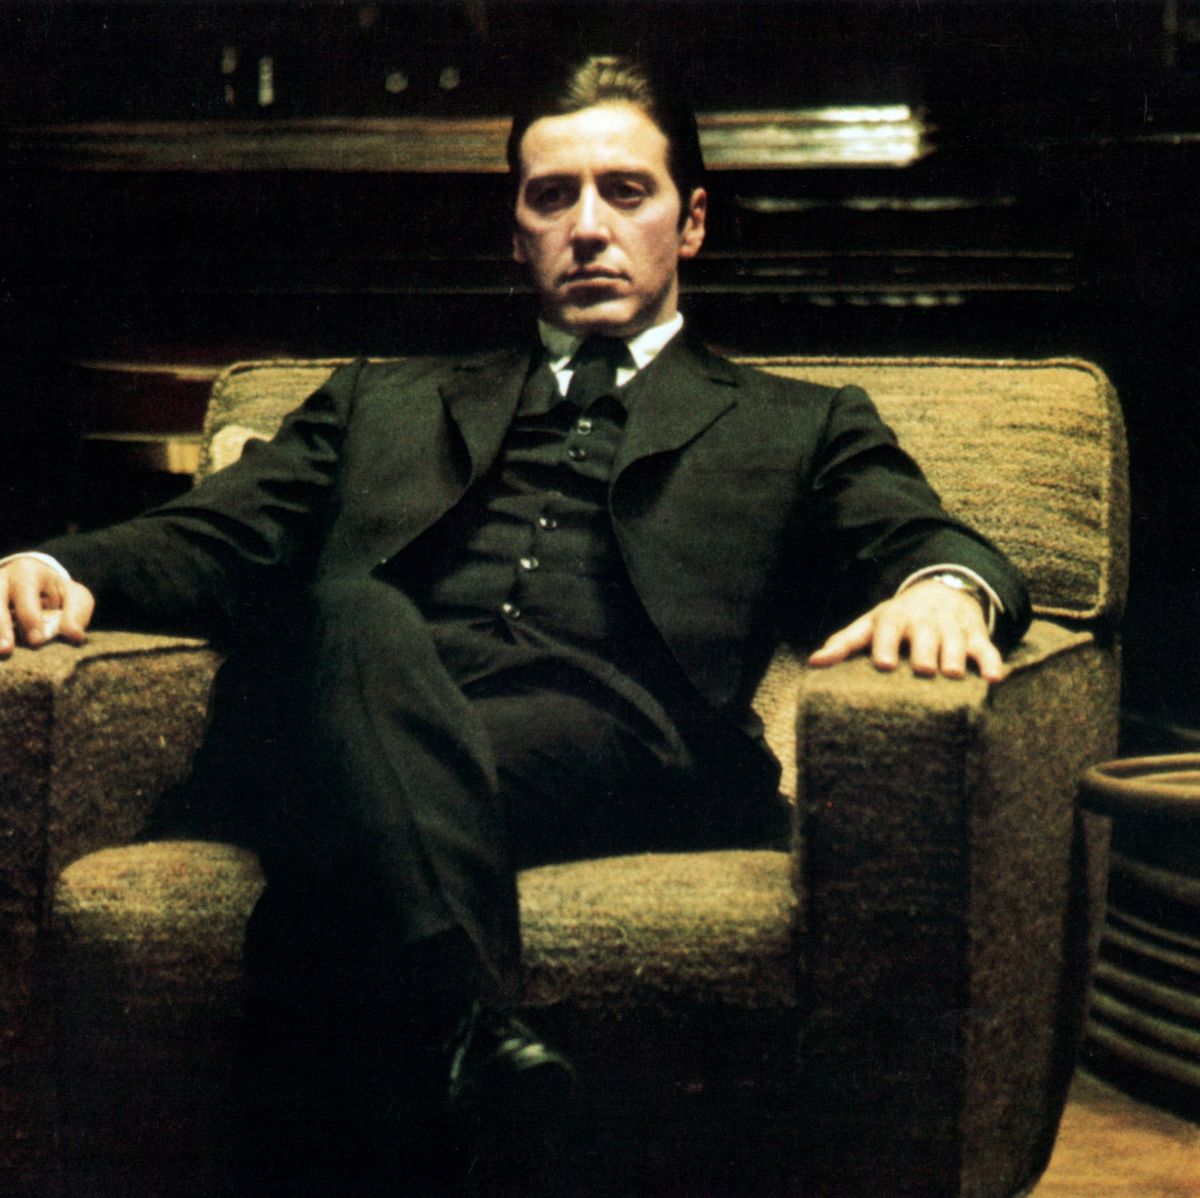 Michael Corleone nos sigue pareciendo un modelo de conducta